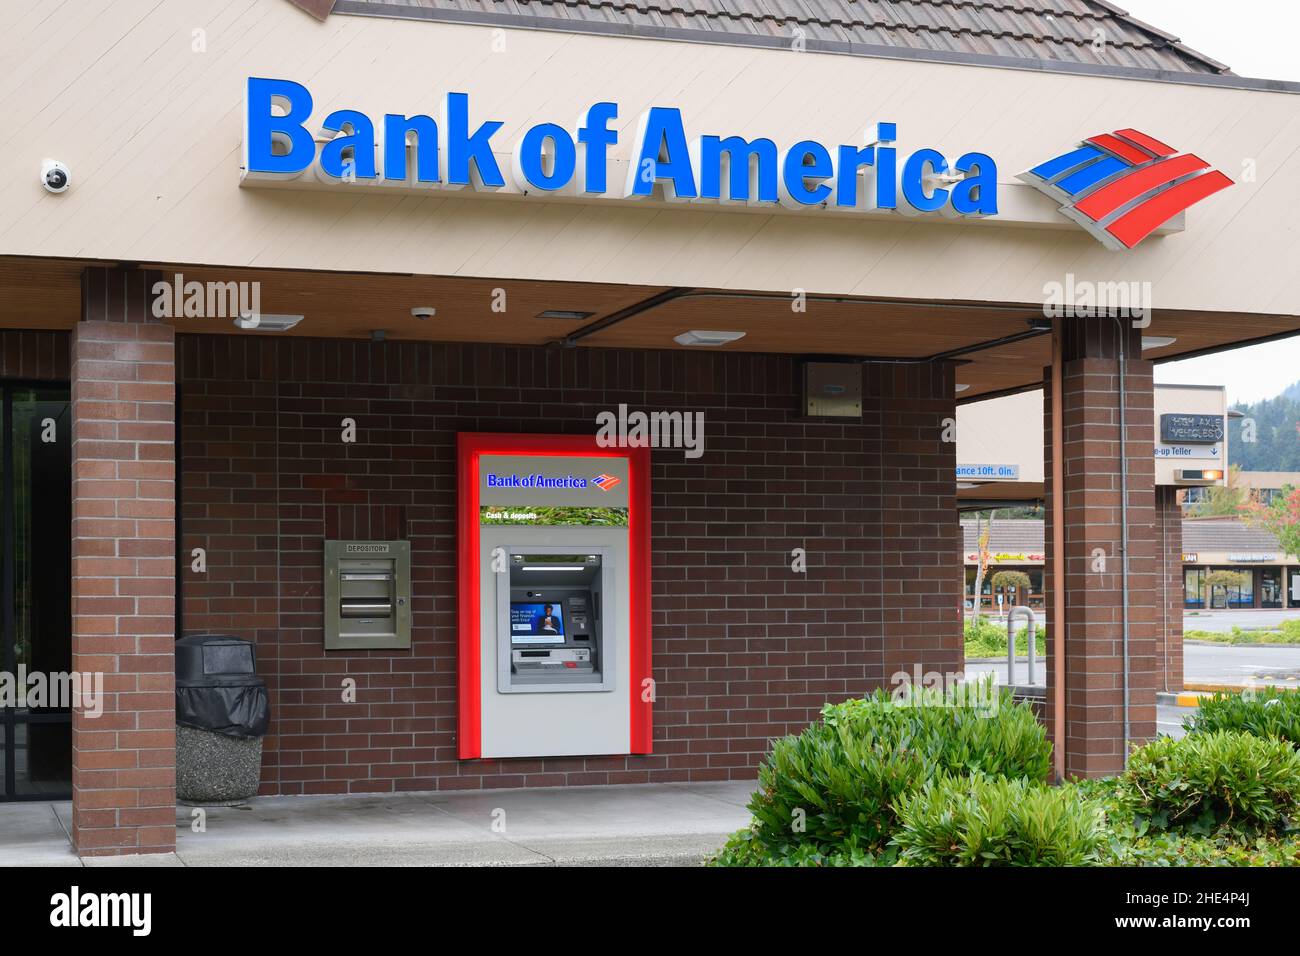 America Banks Name